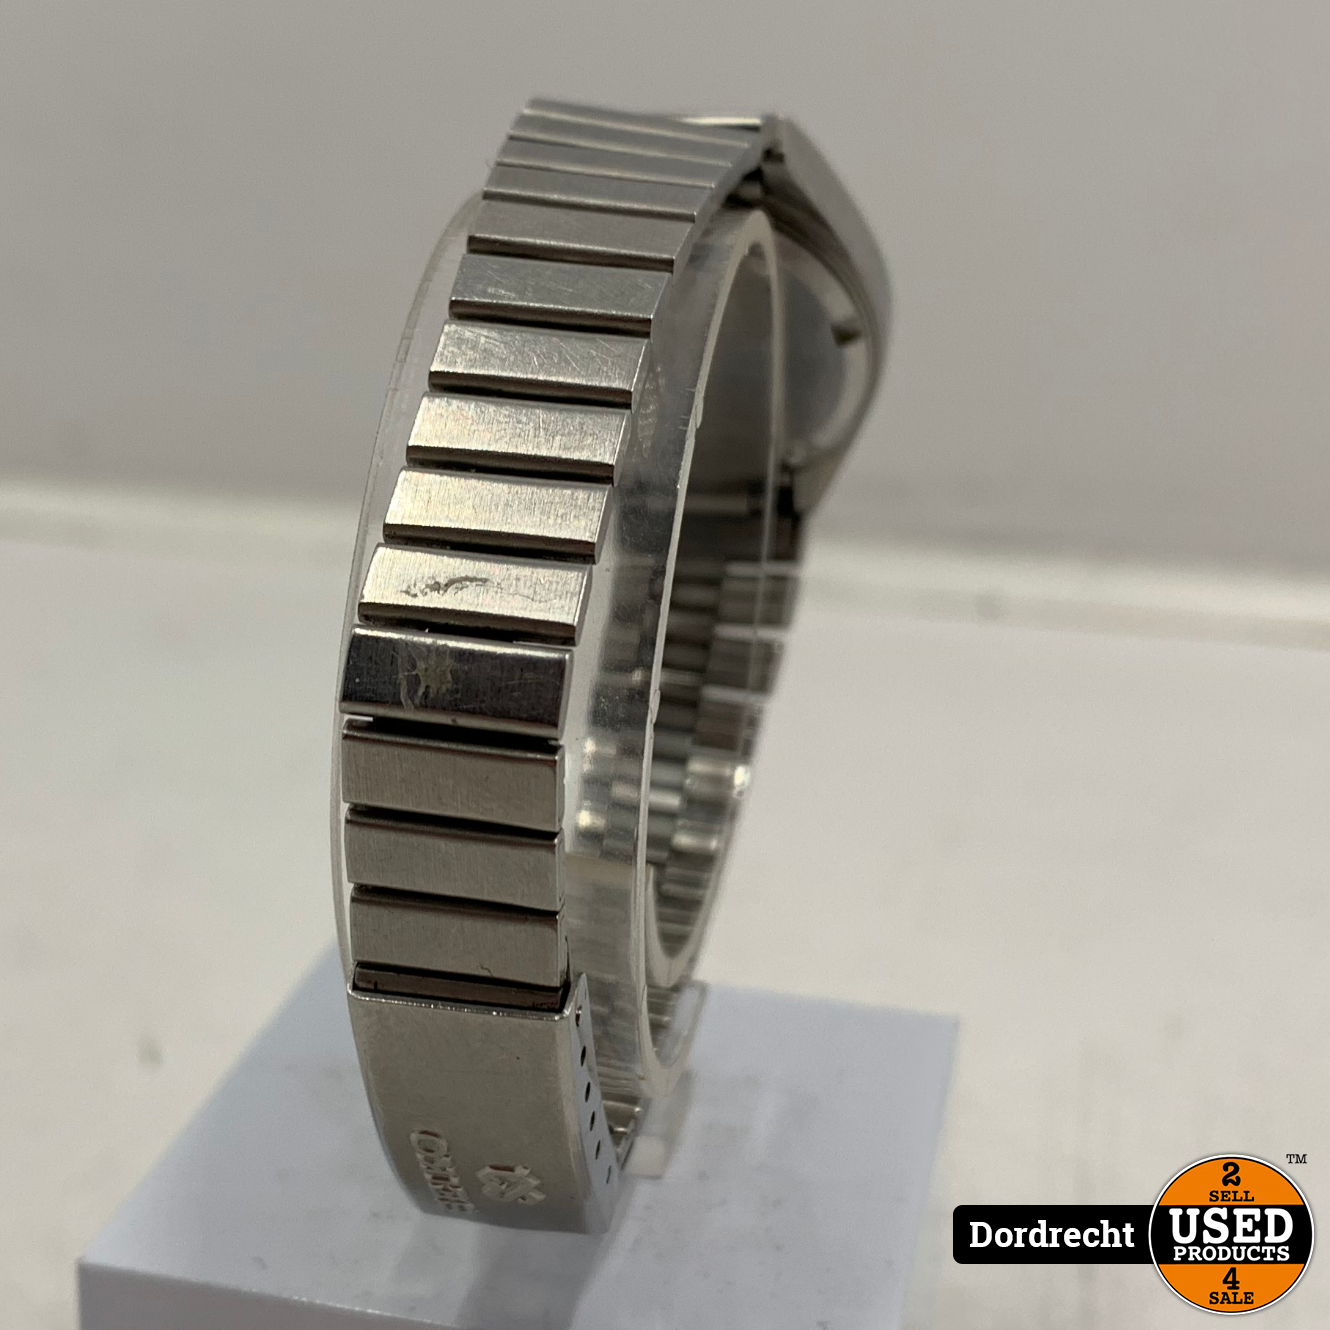 lassen Over het algemeen zout Seiko quartz horloge Zilver | Batterij leeg | Met garantie - Used Products  Dordrecht